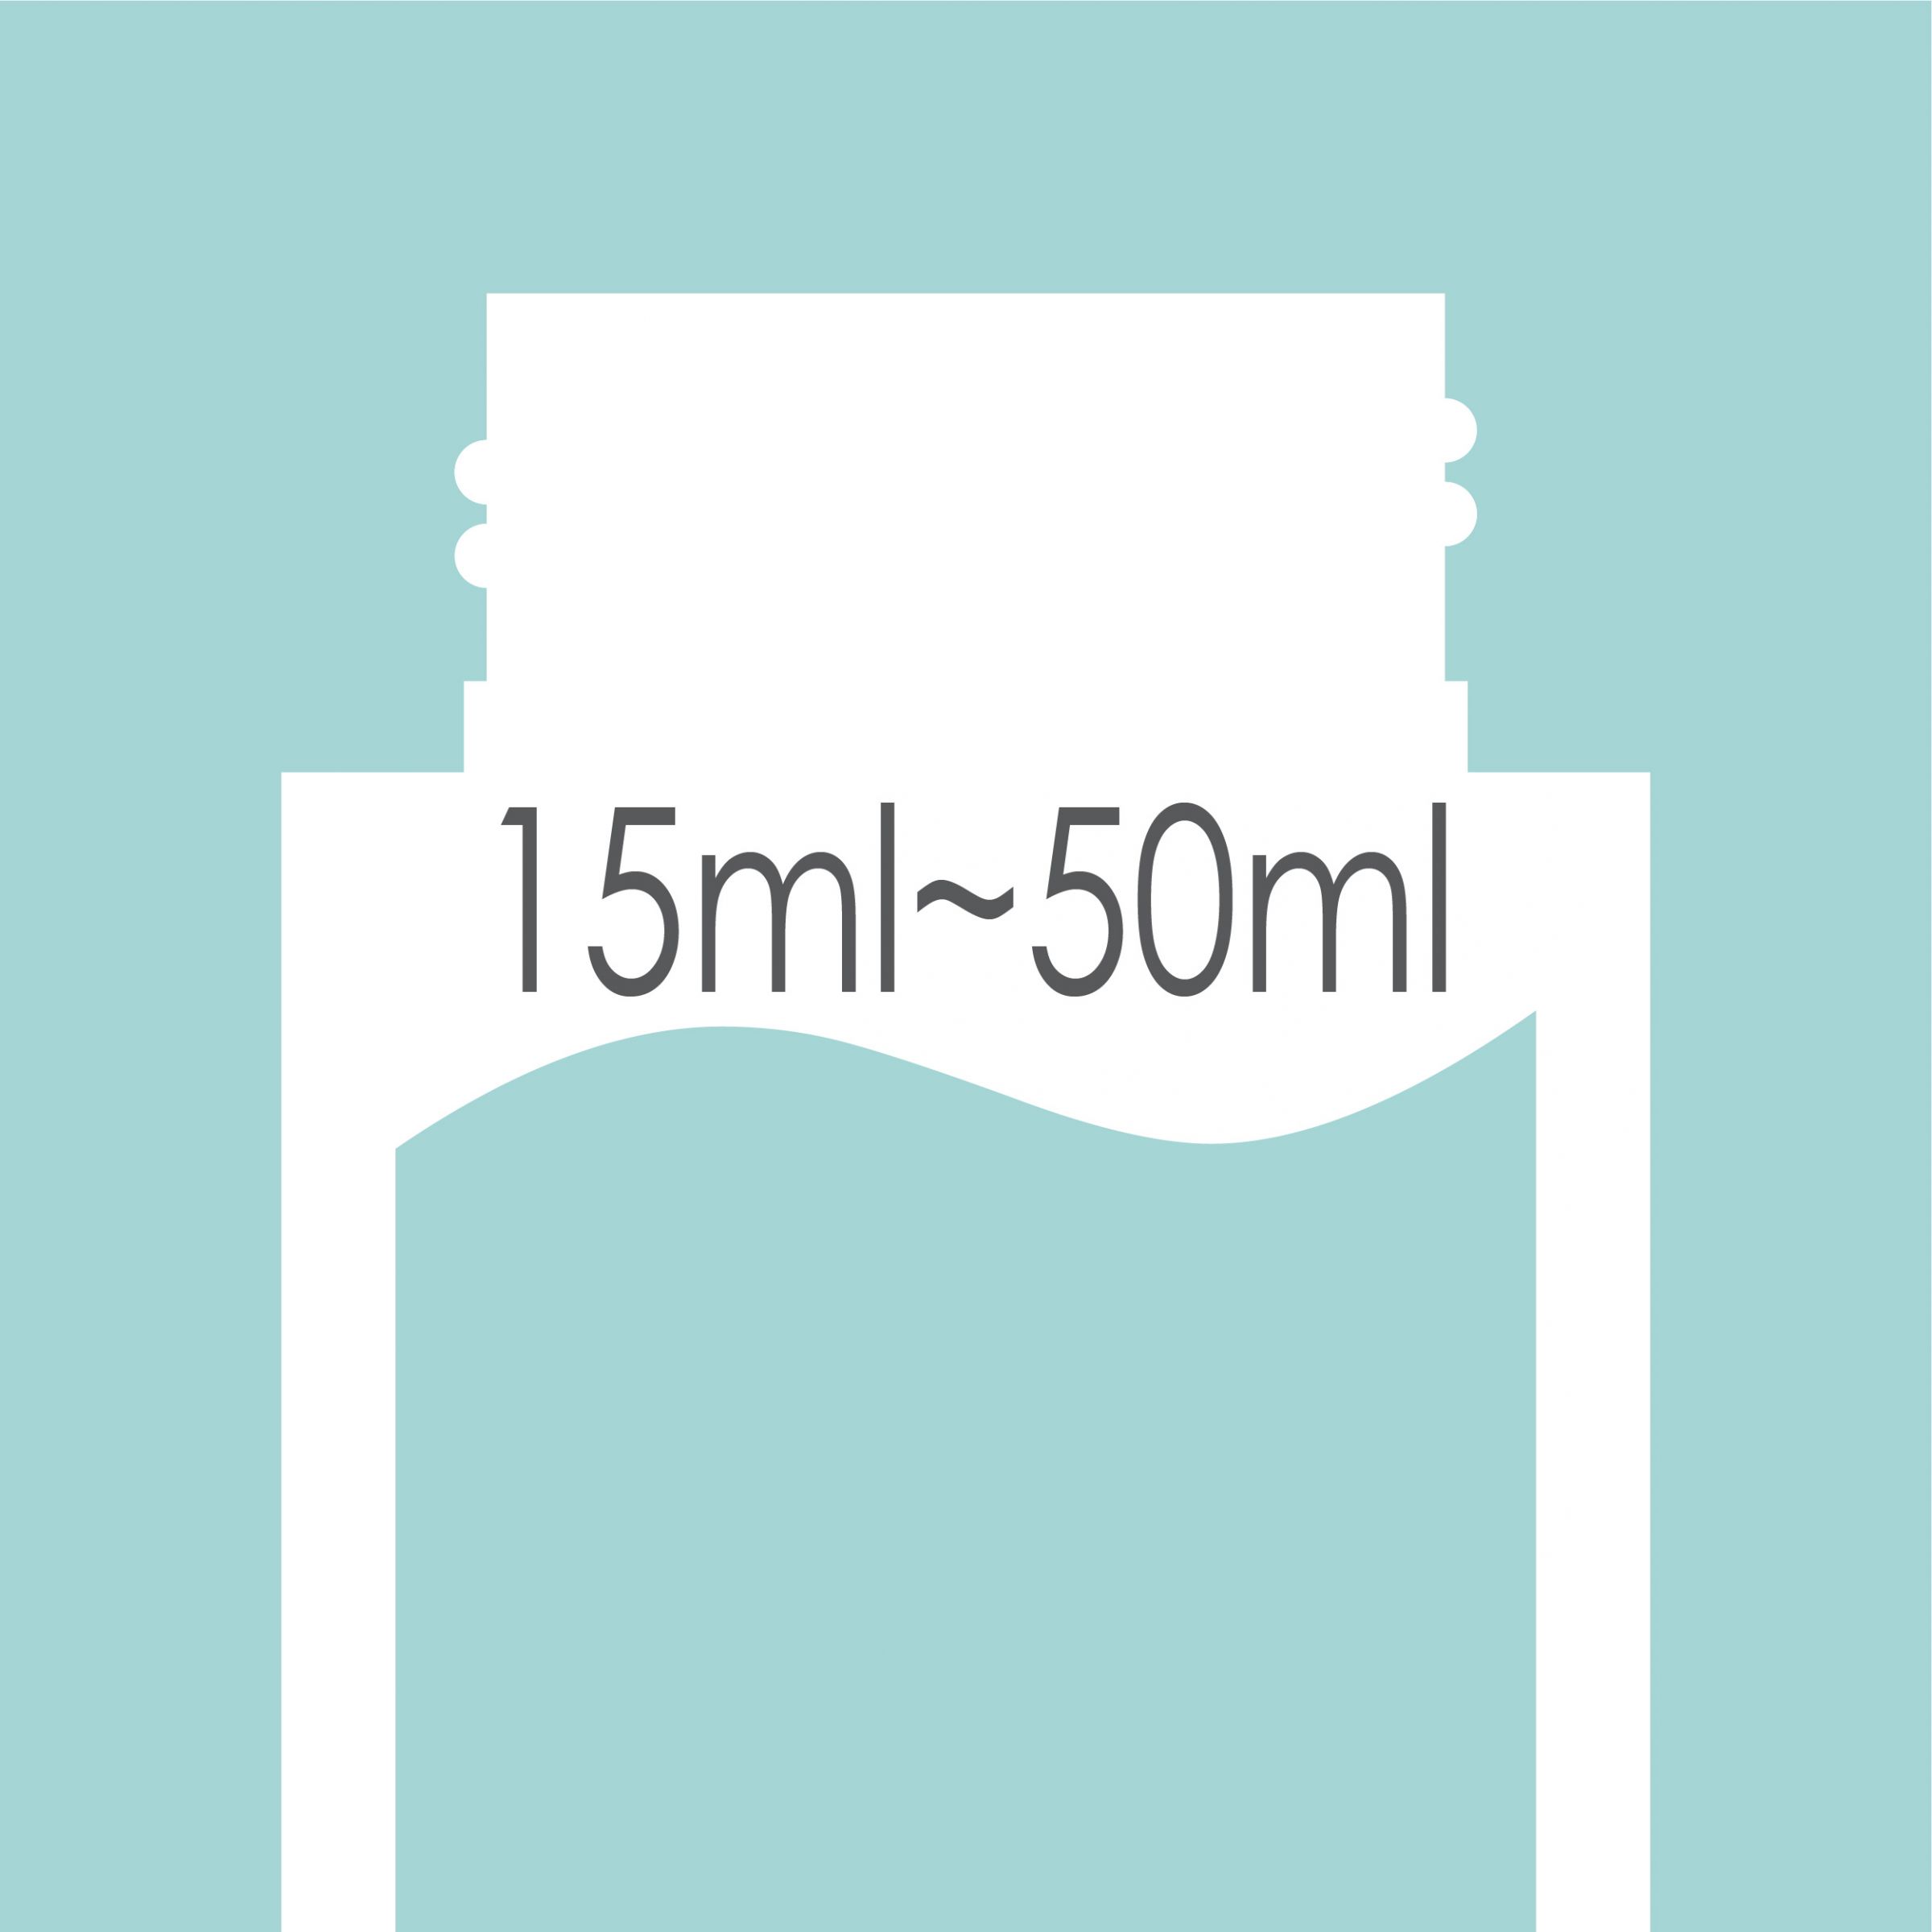 Capacidad de botella de 15 ml - 50 ml